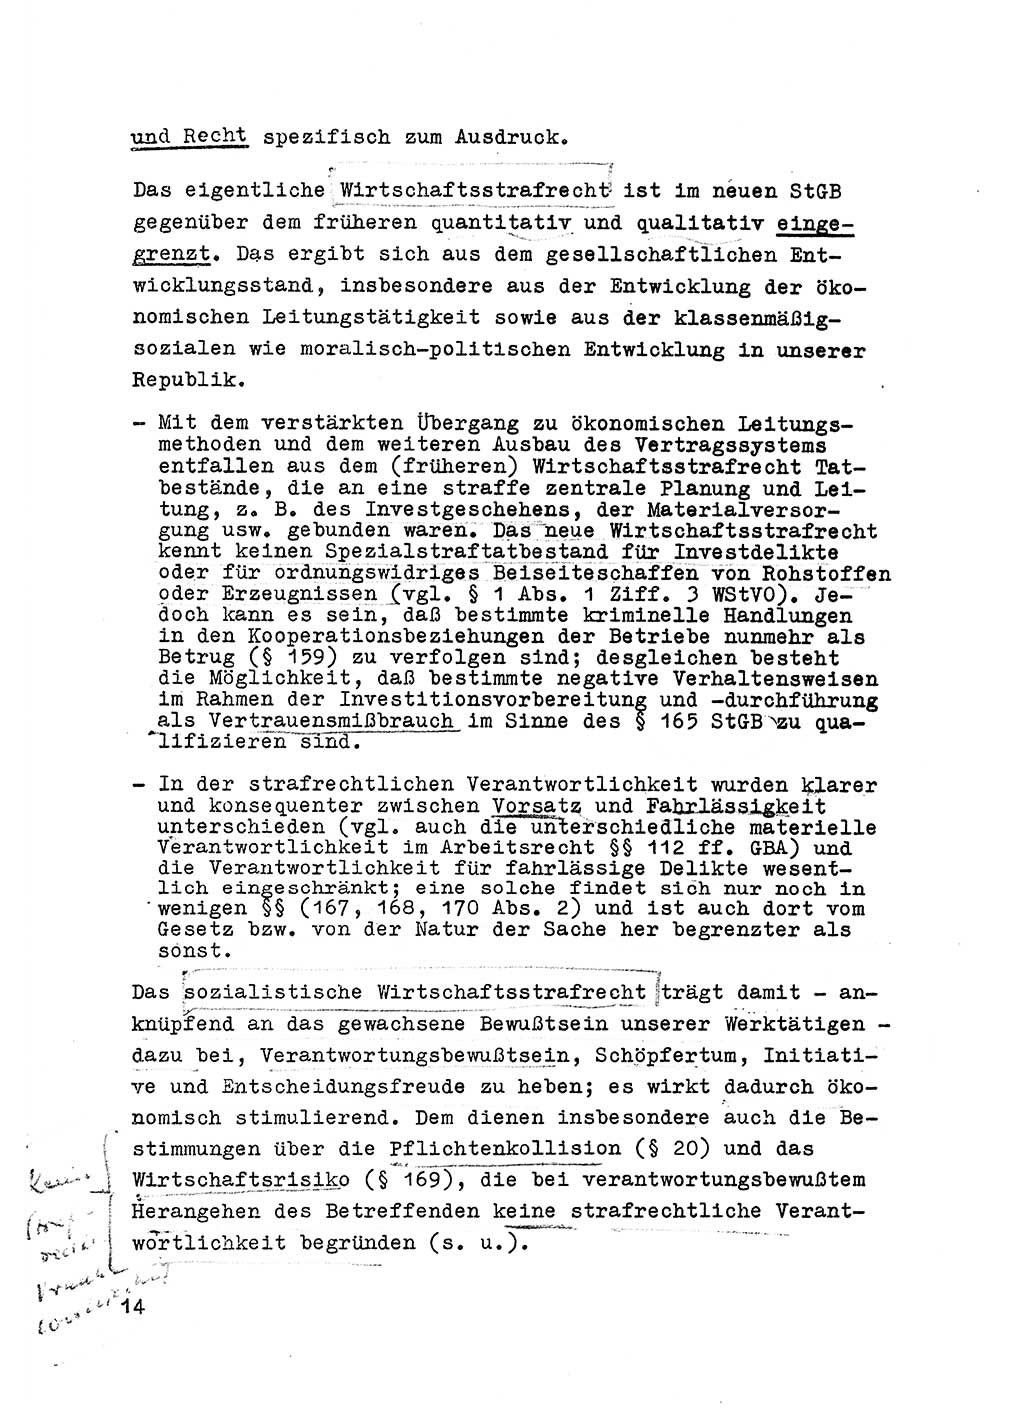 Strafrecht der DDR (Deutsche Demokratische Republik), Besonderer Teil, Lehrmaterial, Heft 6 1970, Seite 14 (Strafr. DDR BT Lehrmat. H. 6 1970, S. 14)